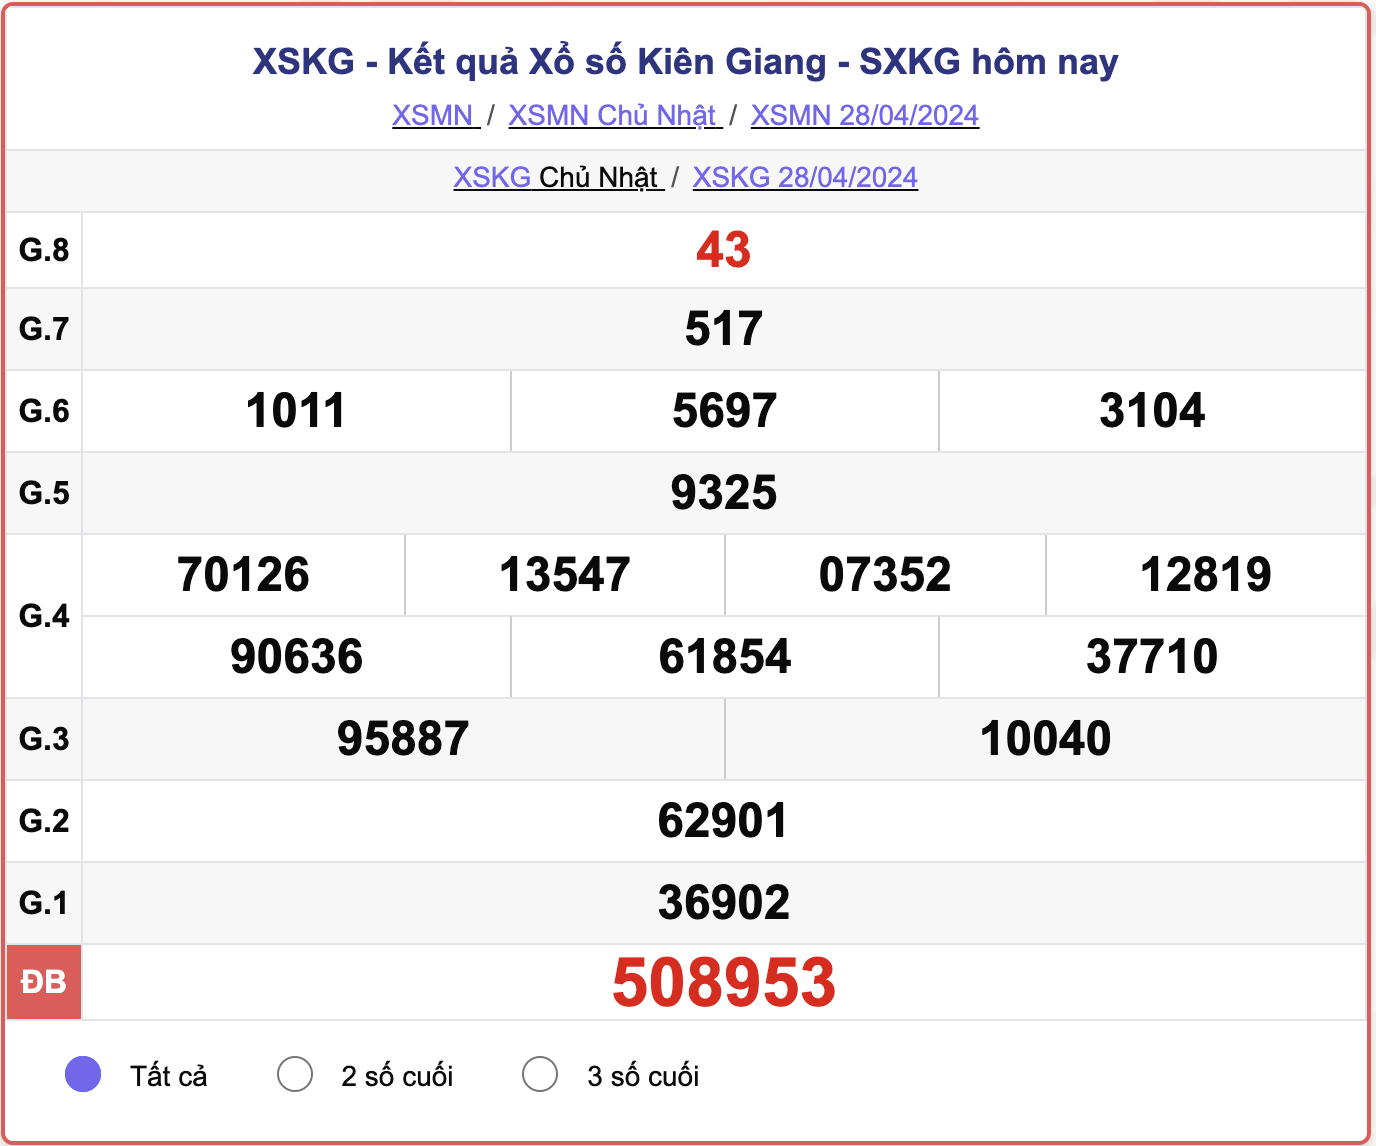 XSKG Chủ nhật, kết quả xổ số Kiên Giang ngày 28/4/2024.